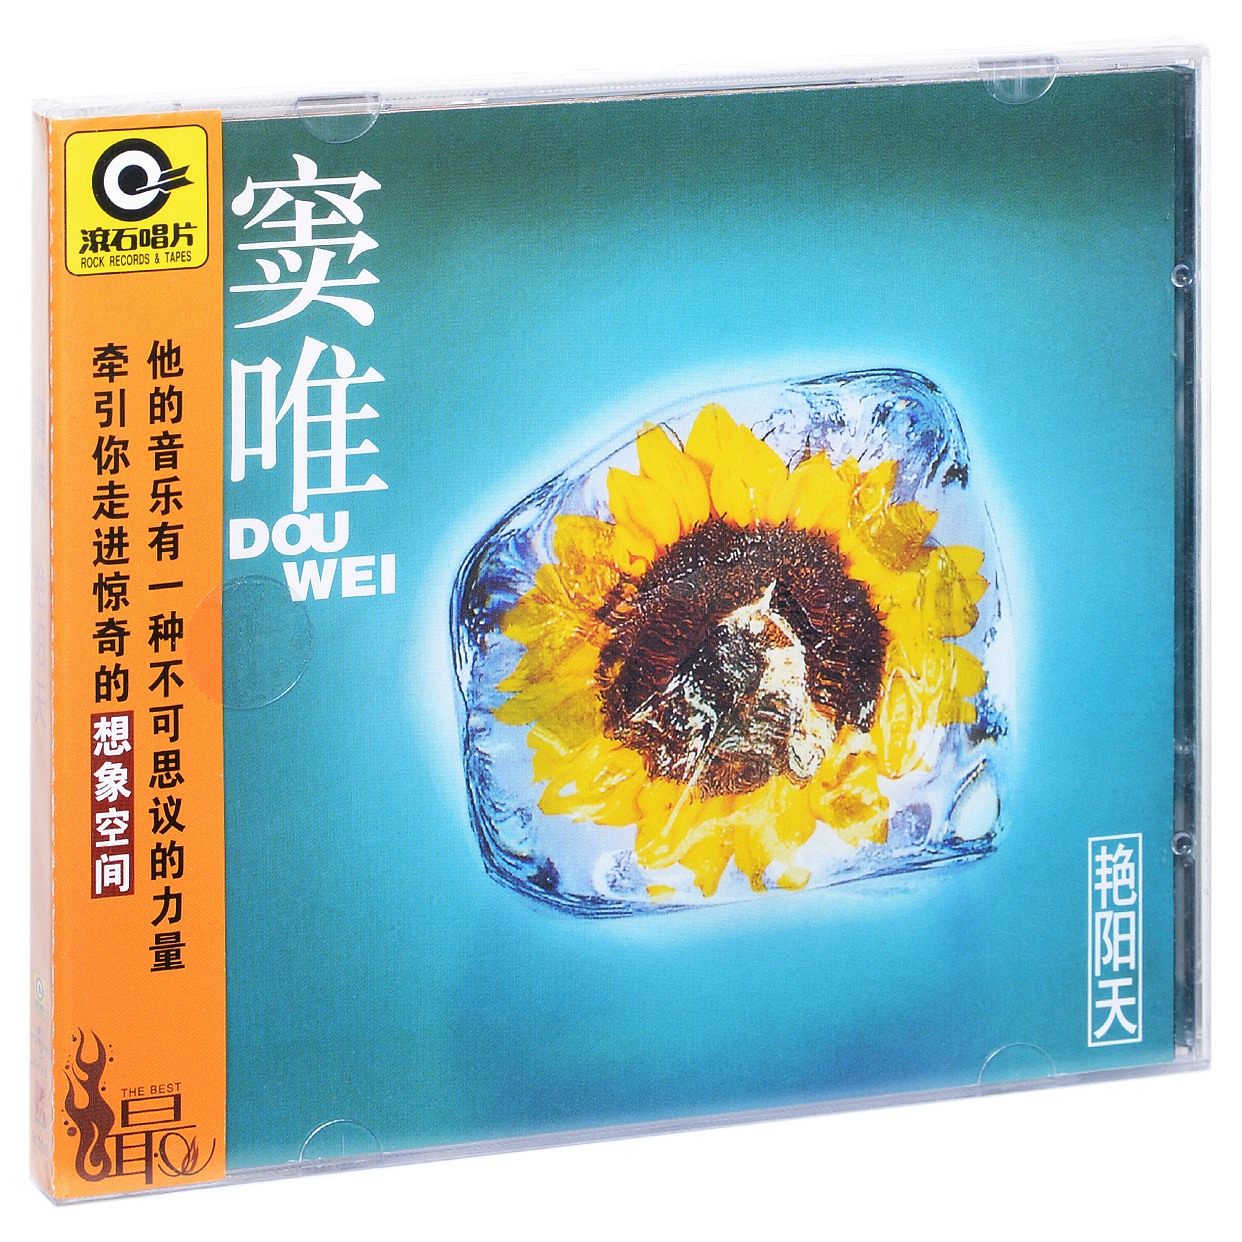 正版滚石系列 窦唯 艳阳天 1995专辑唱片CD+歌词本